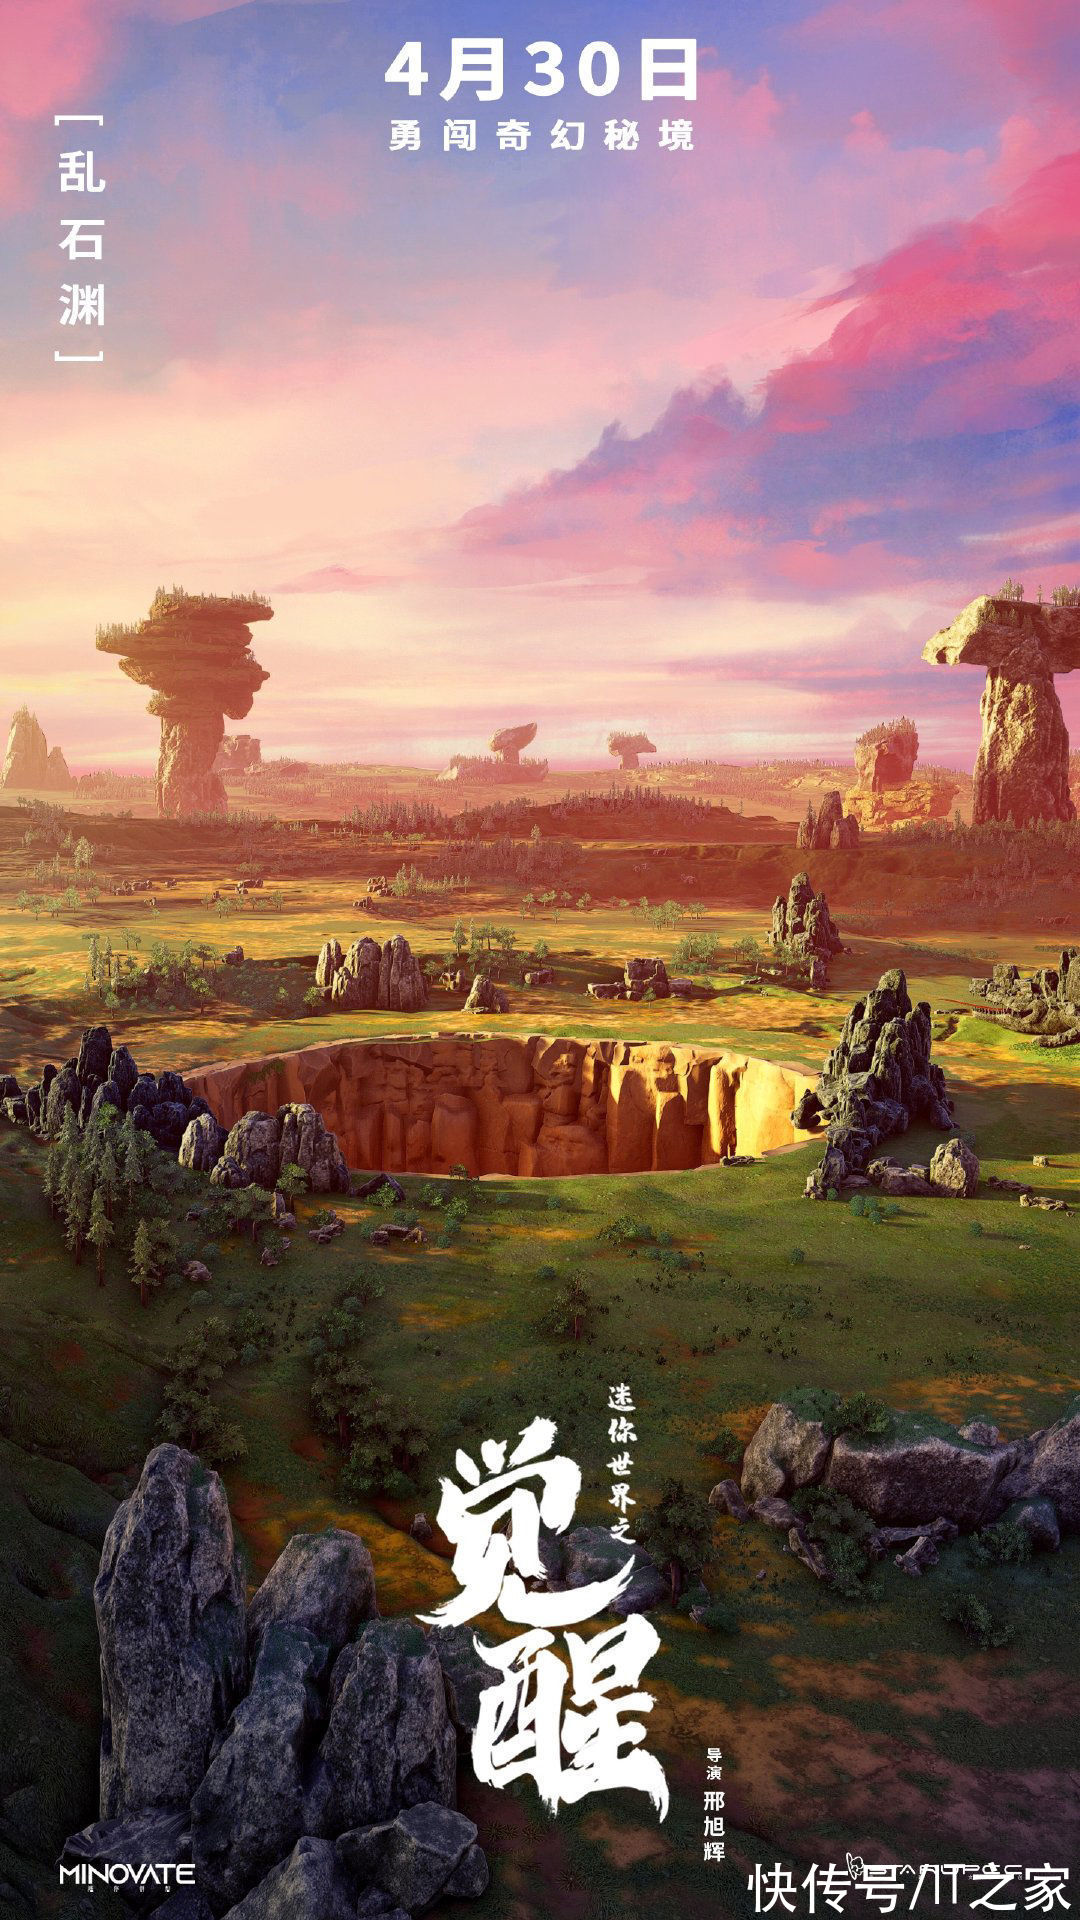 海报|首部沙盒游戏IP电影《迷你世界之觉醒》公布新海报